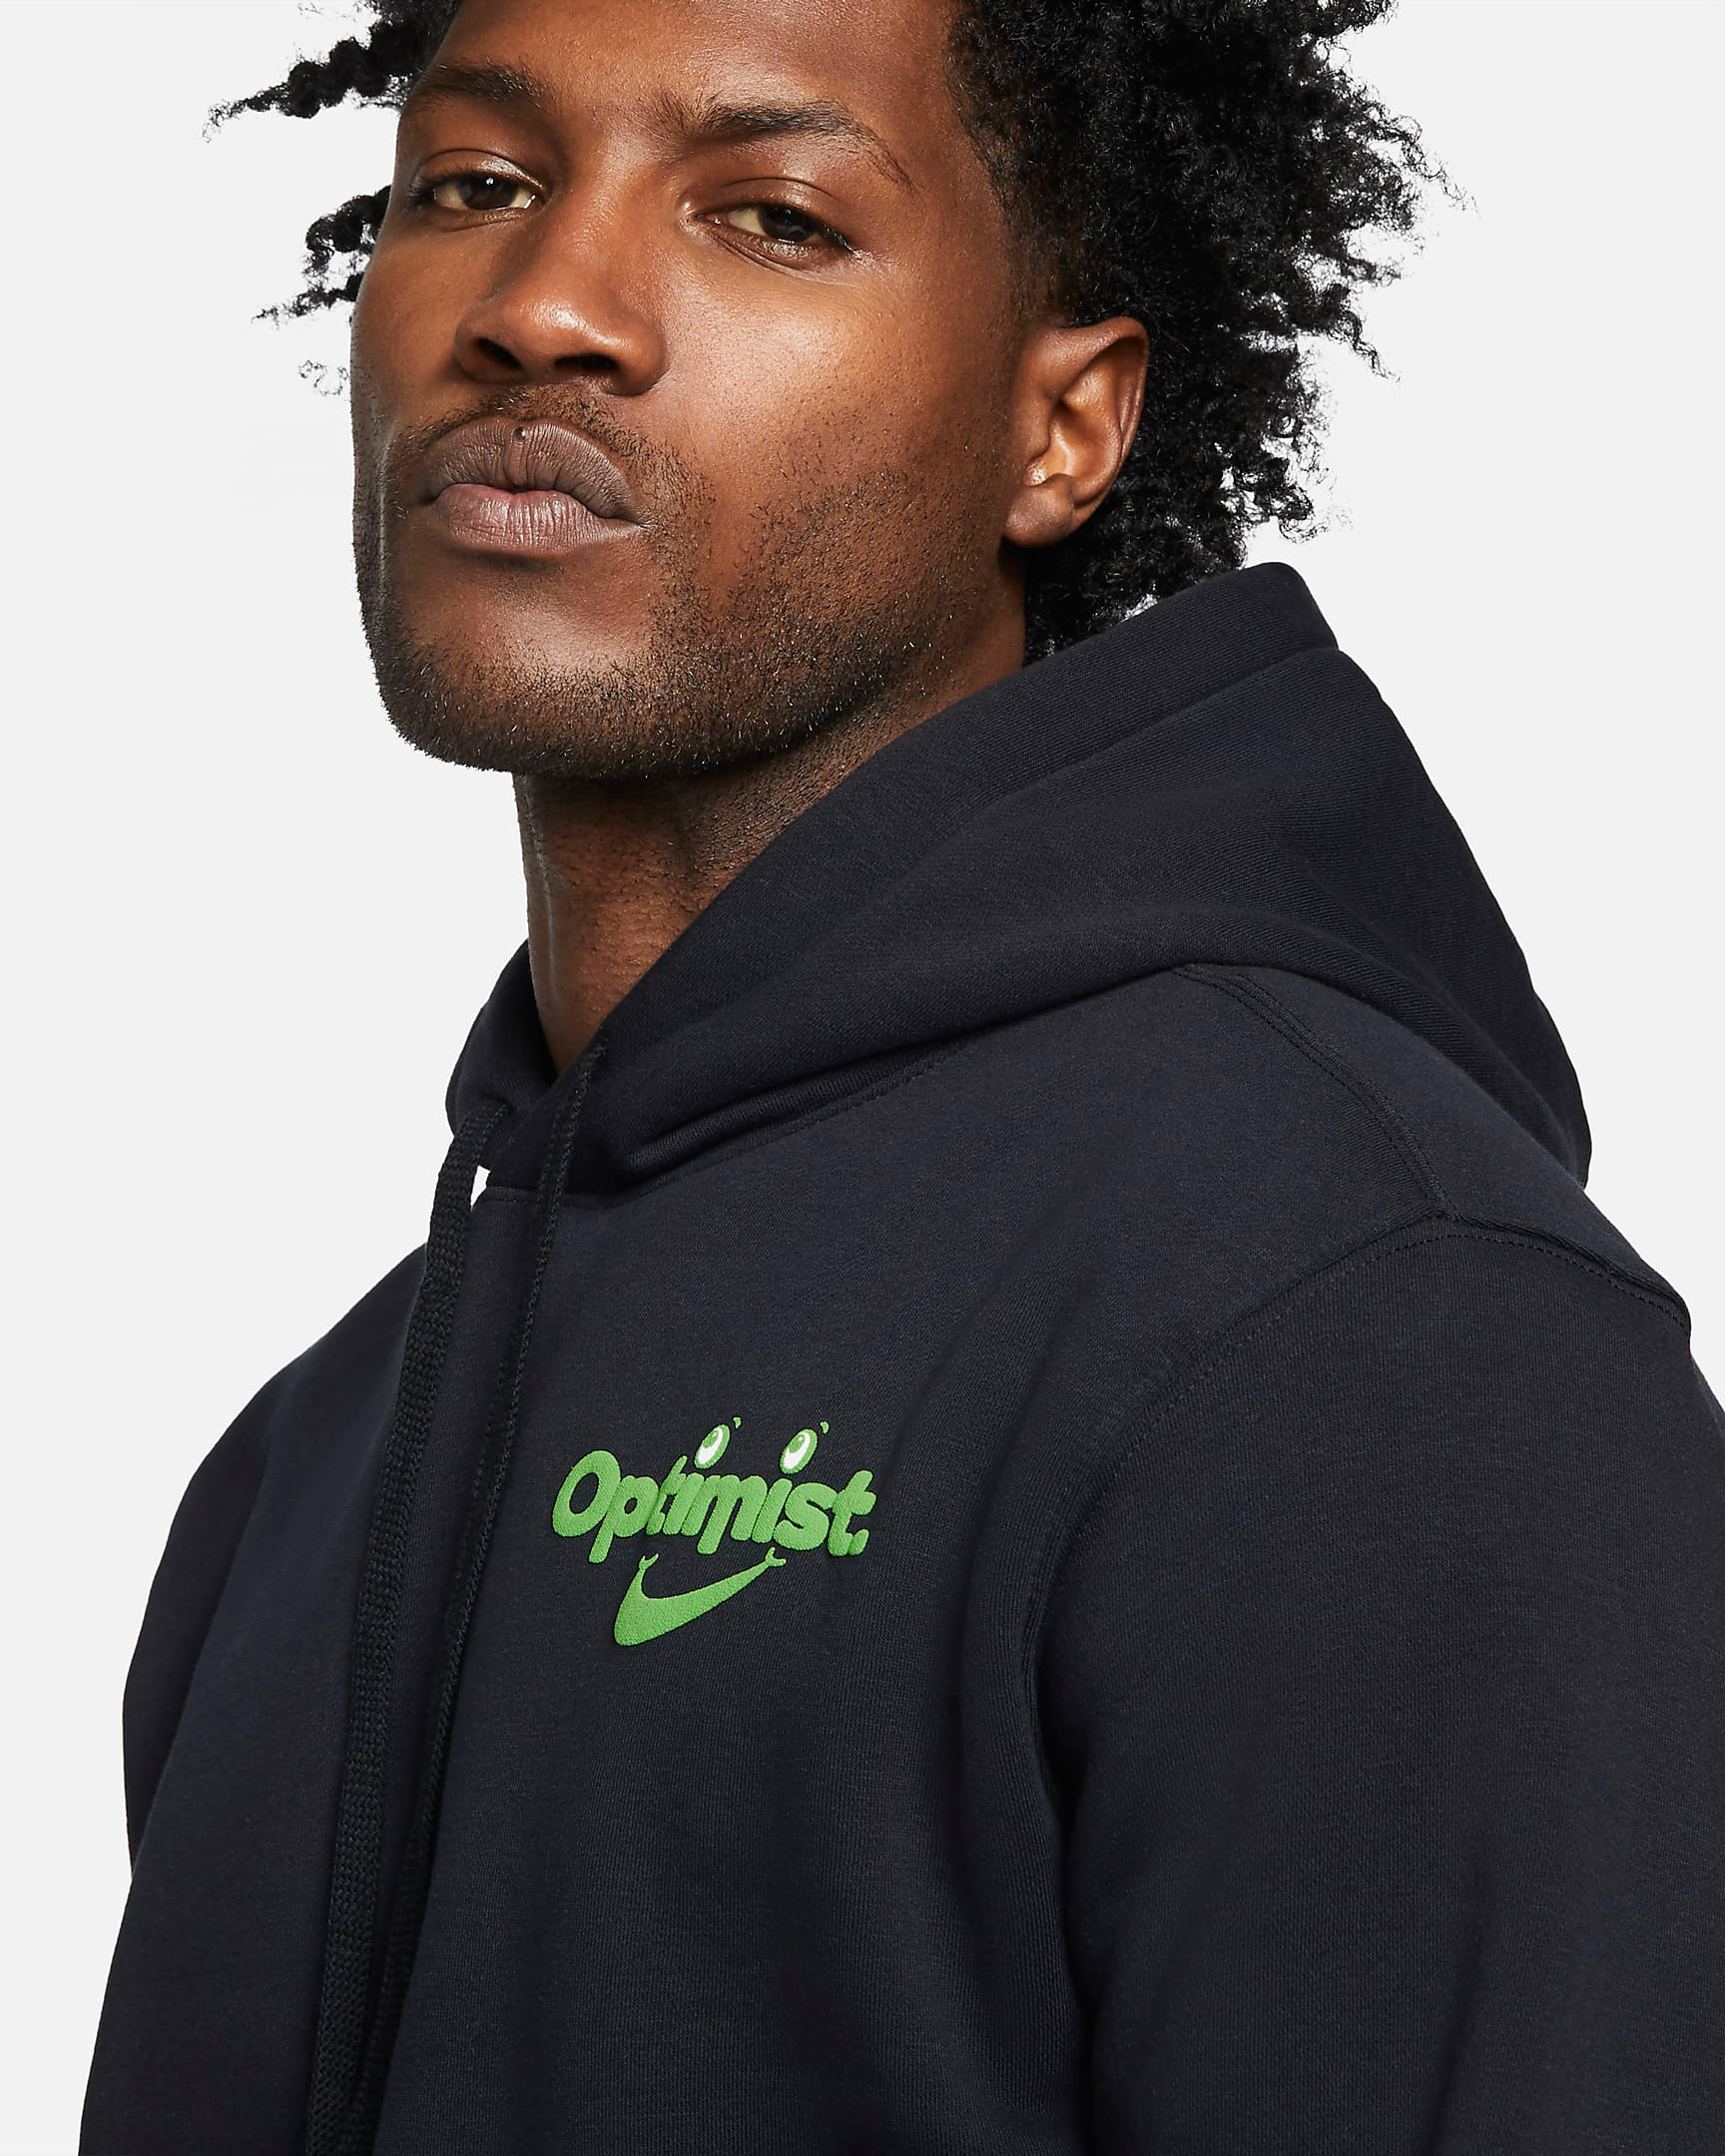 nike-sportswear-optimist-hoodie-black-green-2